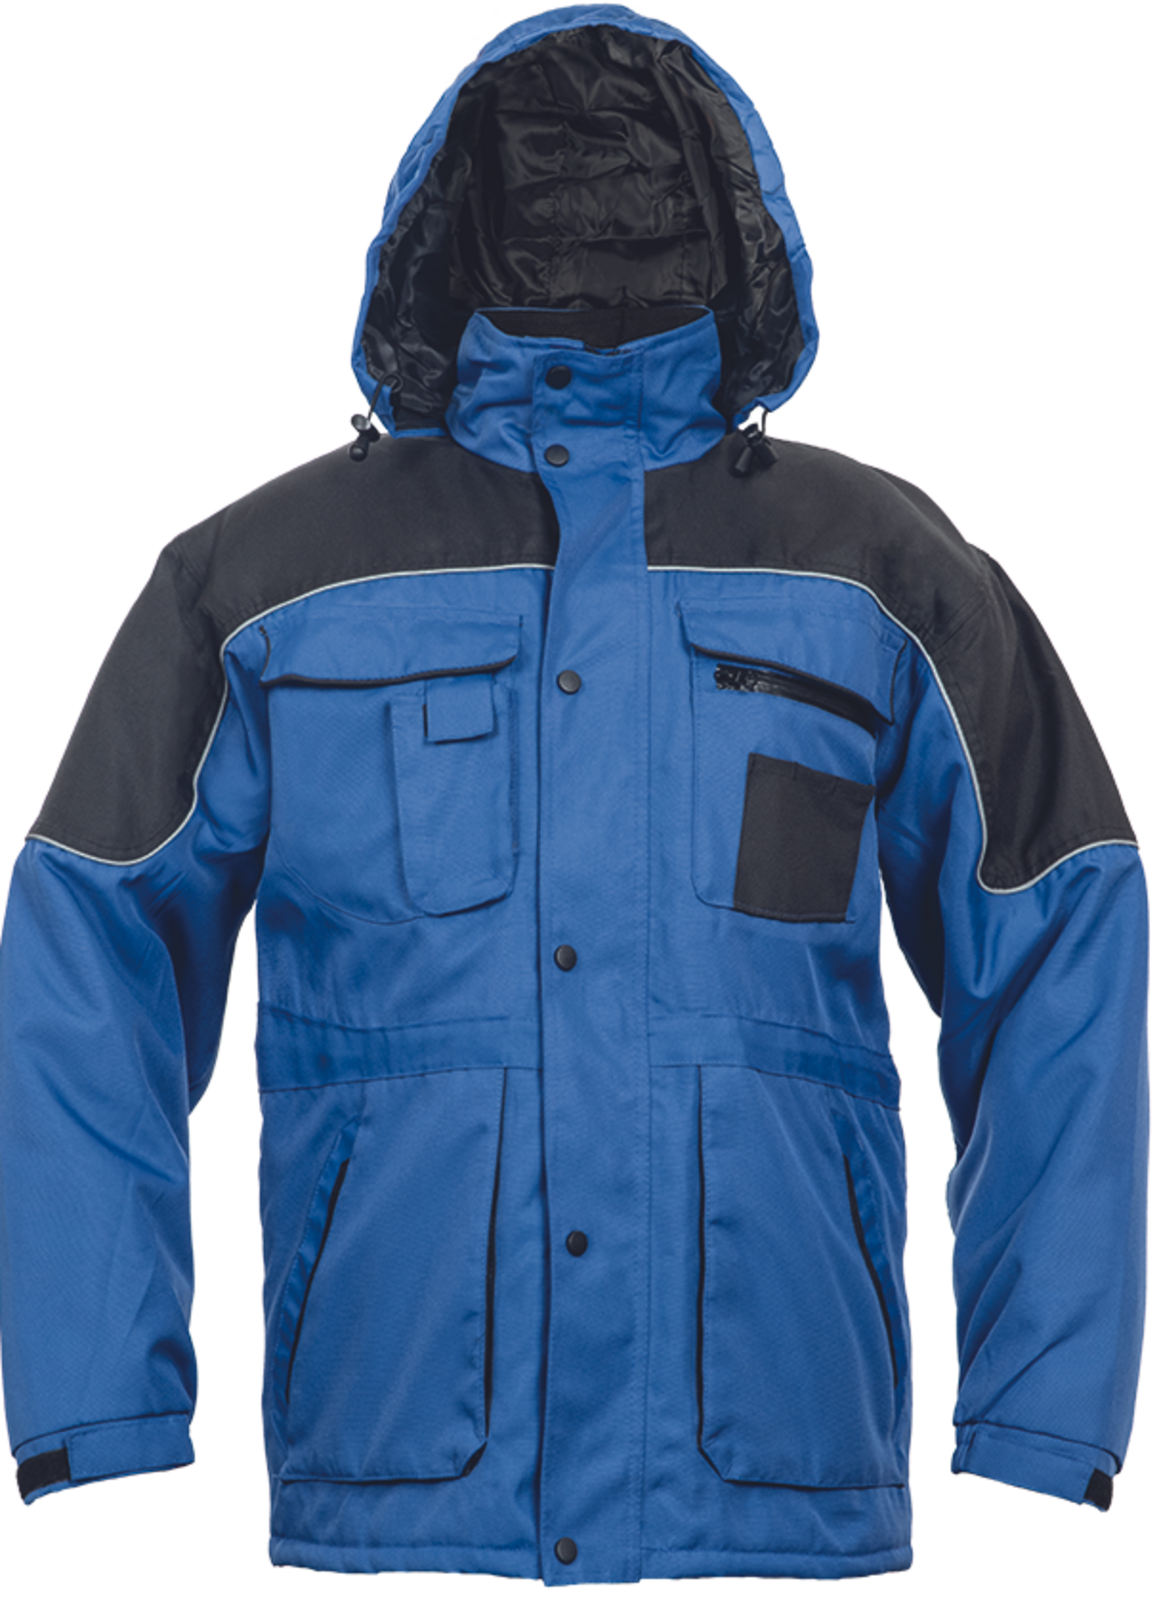 Pracovná bunda Ultimo pánska - veľkosť: 3XL, farba: modrá/čierna